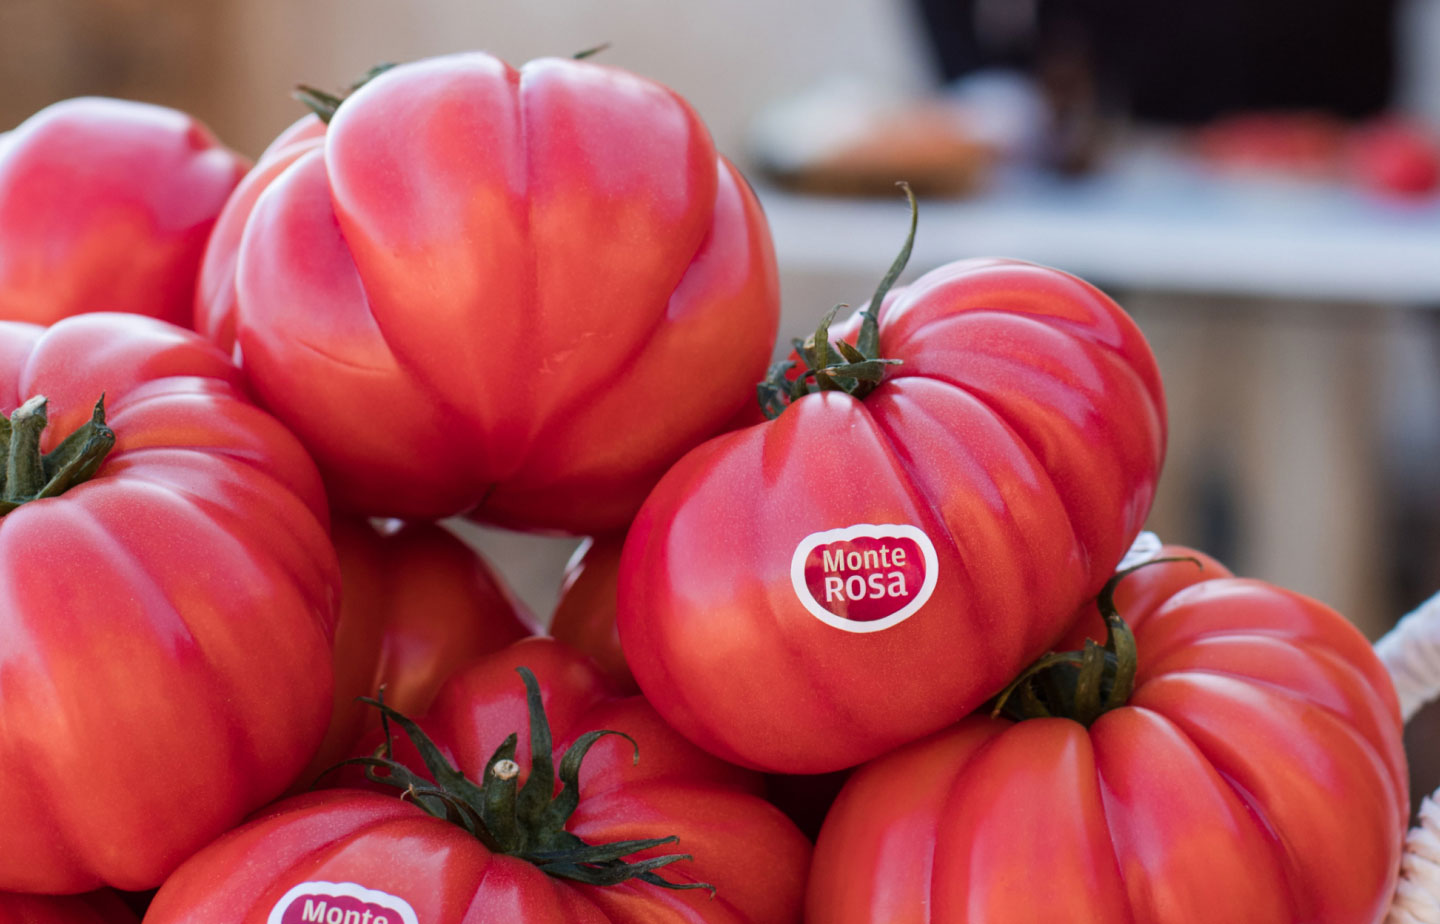 monterosa la historia del tomate